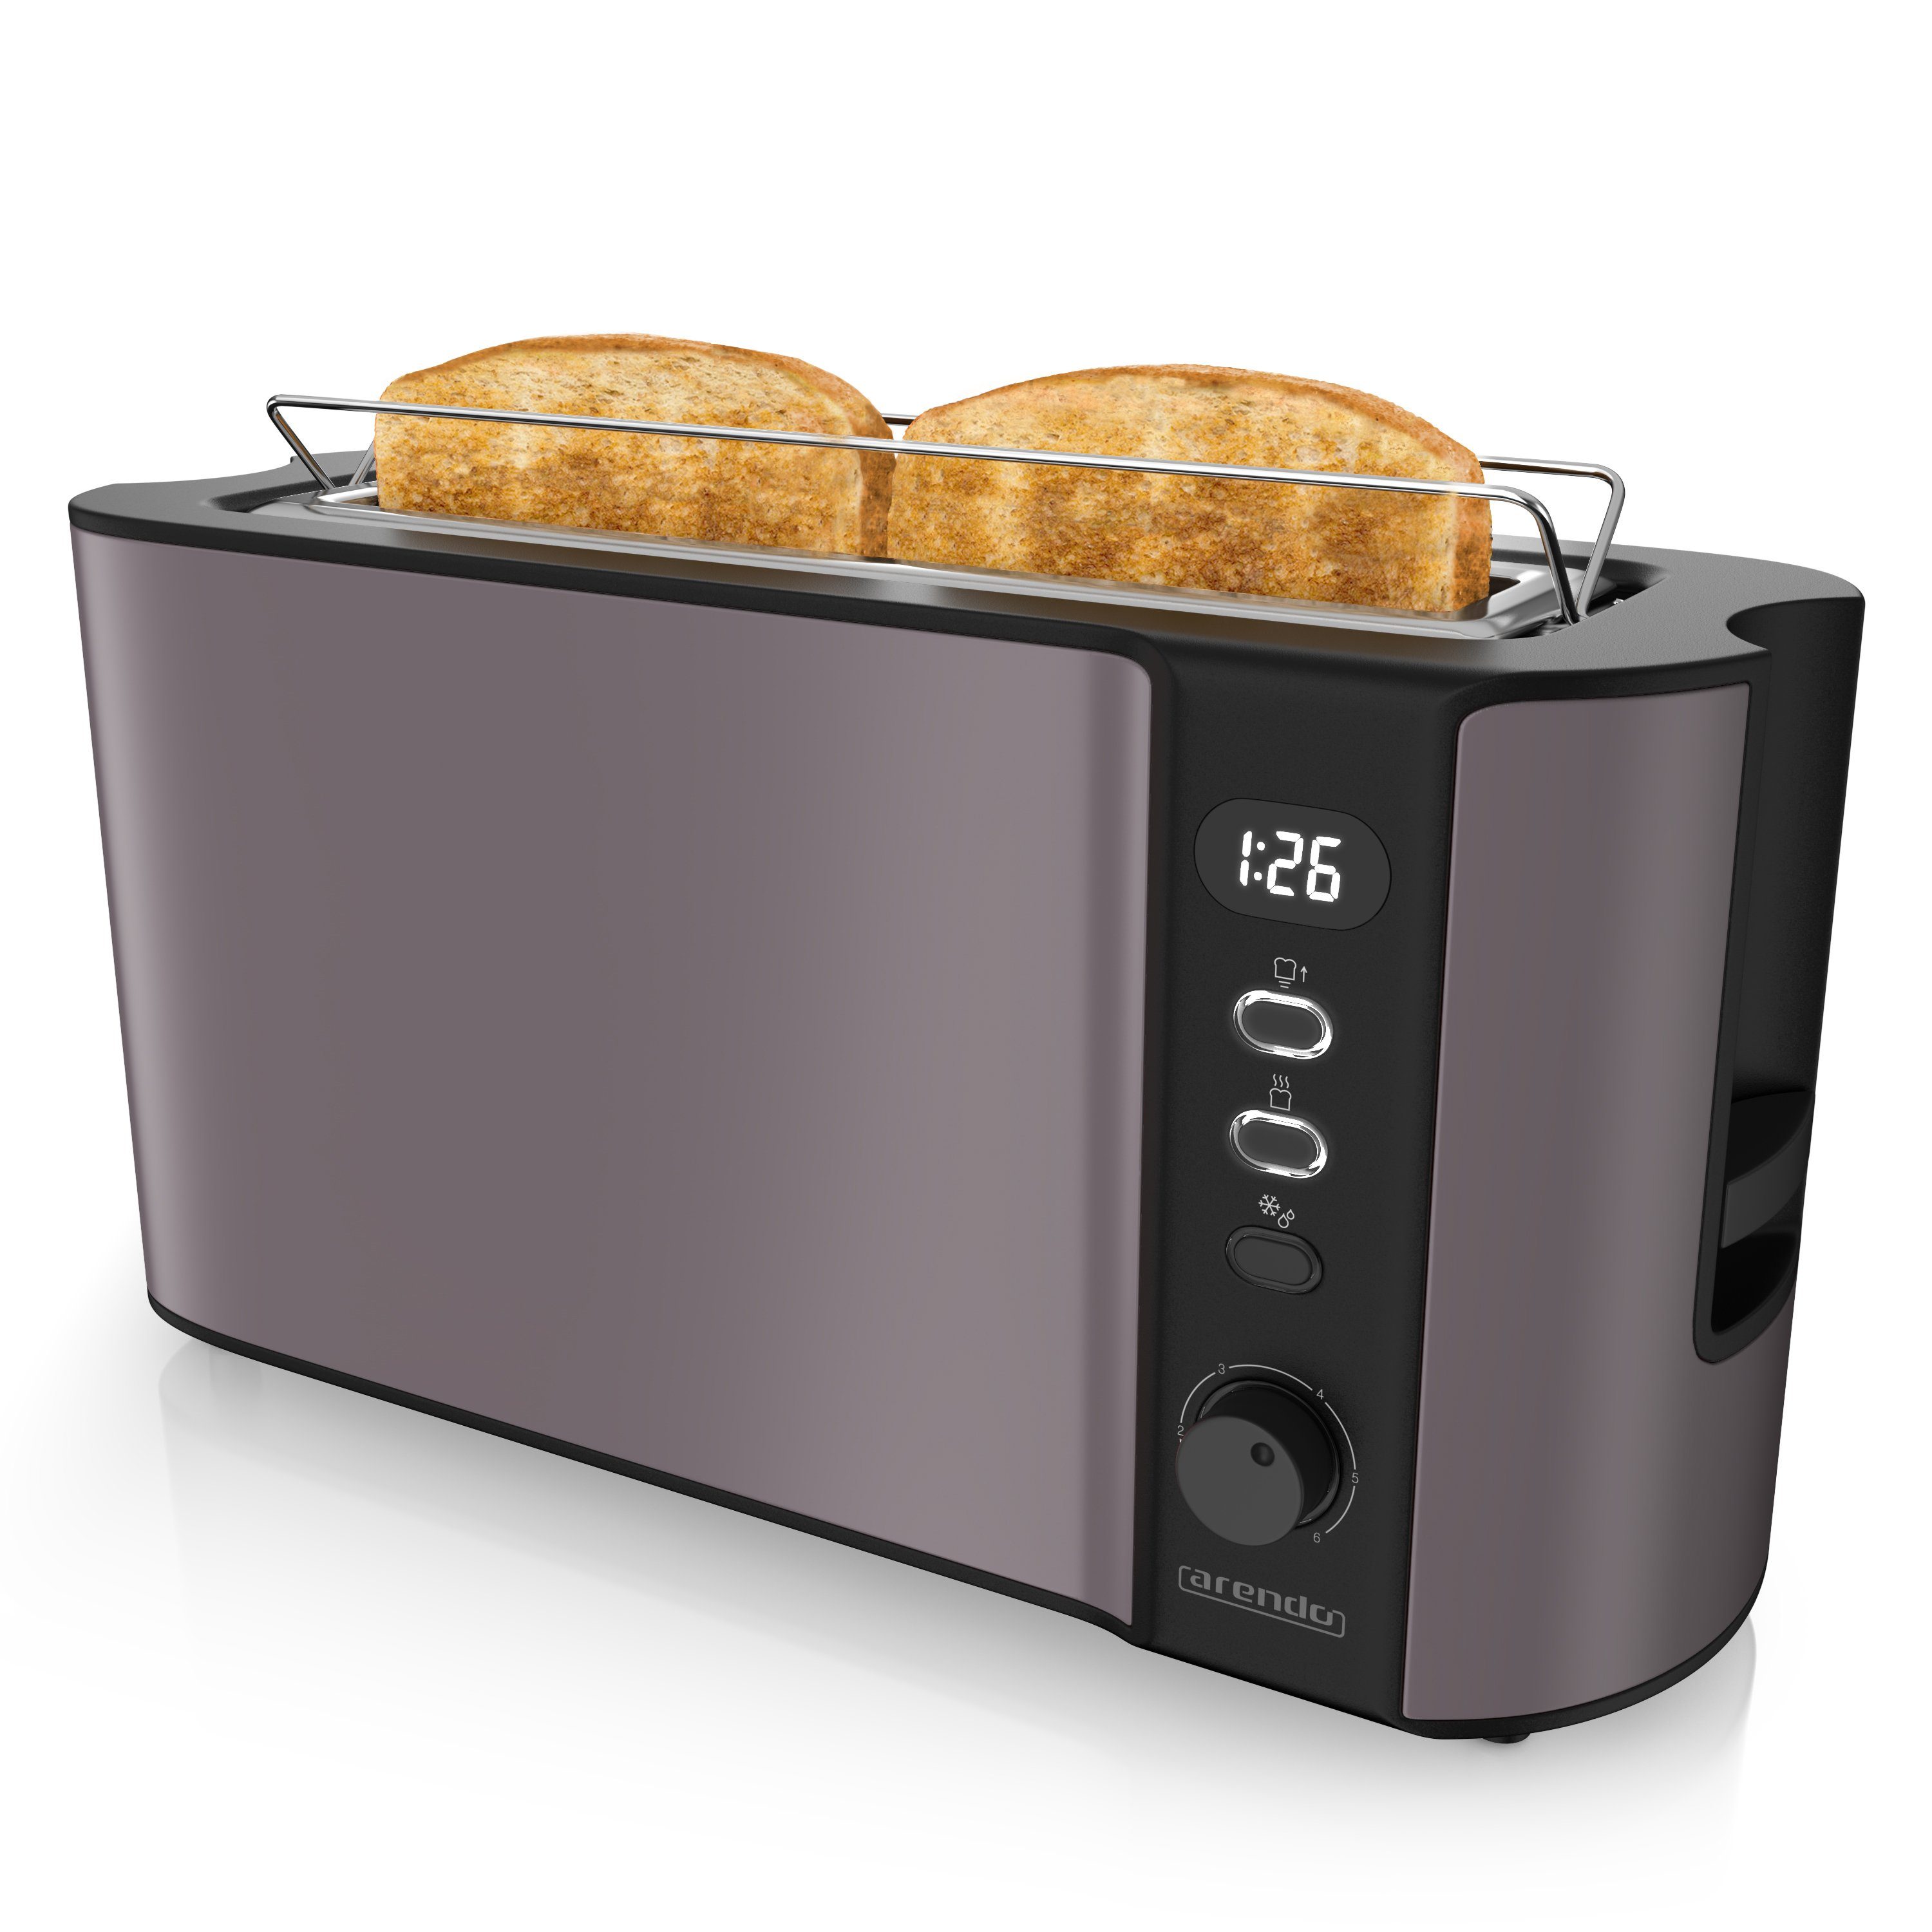 Arendo Toaster, 1 langer Schlitz, Display 2 Langschlitz, W, Wärmeisolierendes grau/silber 1000 Gehäuse, Scheiben, für Brötchenaufsatz